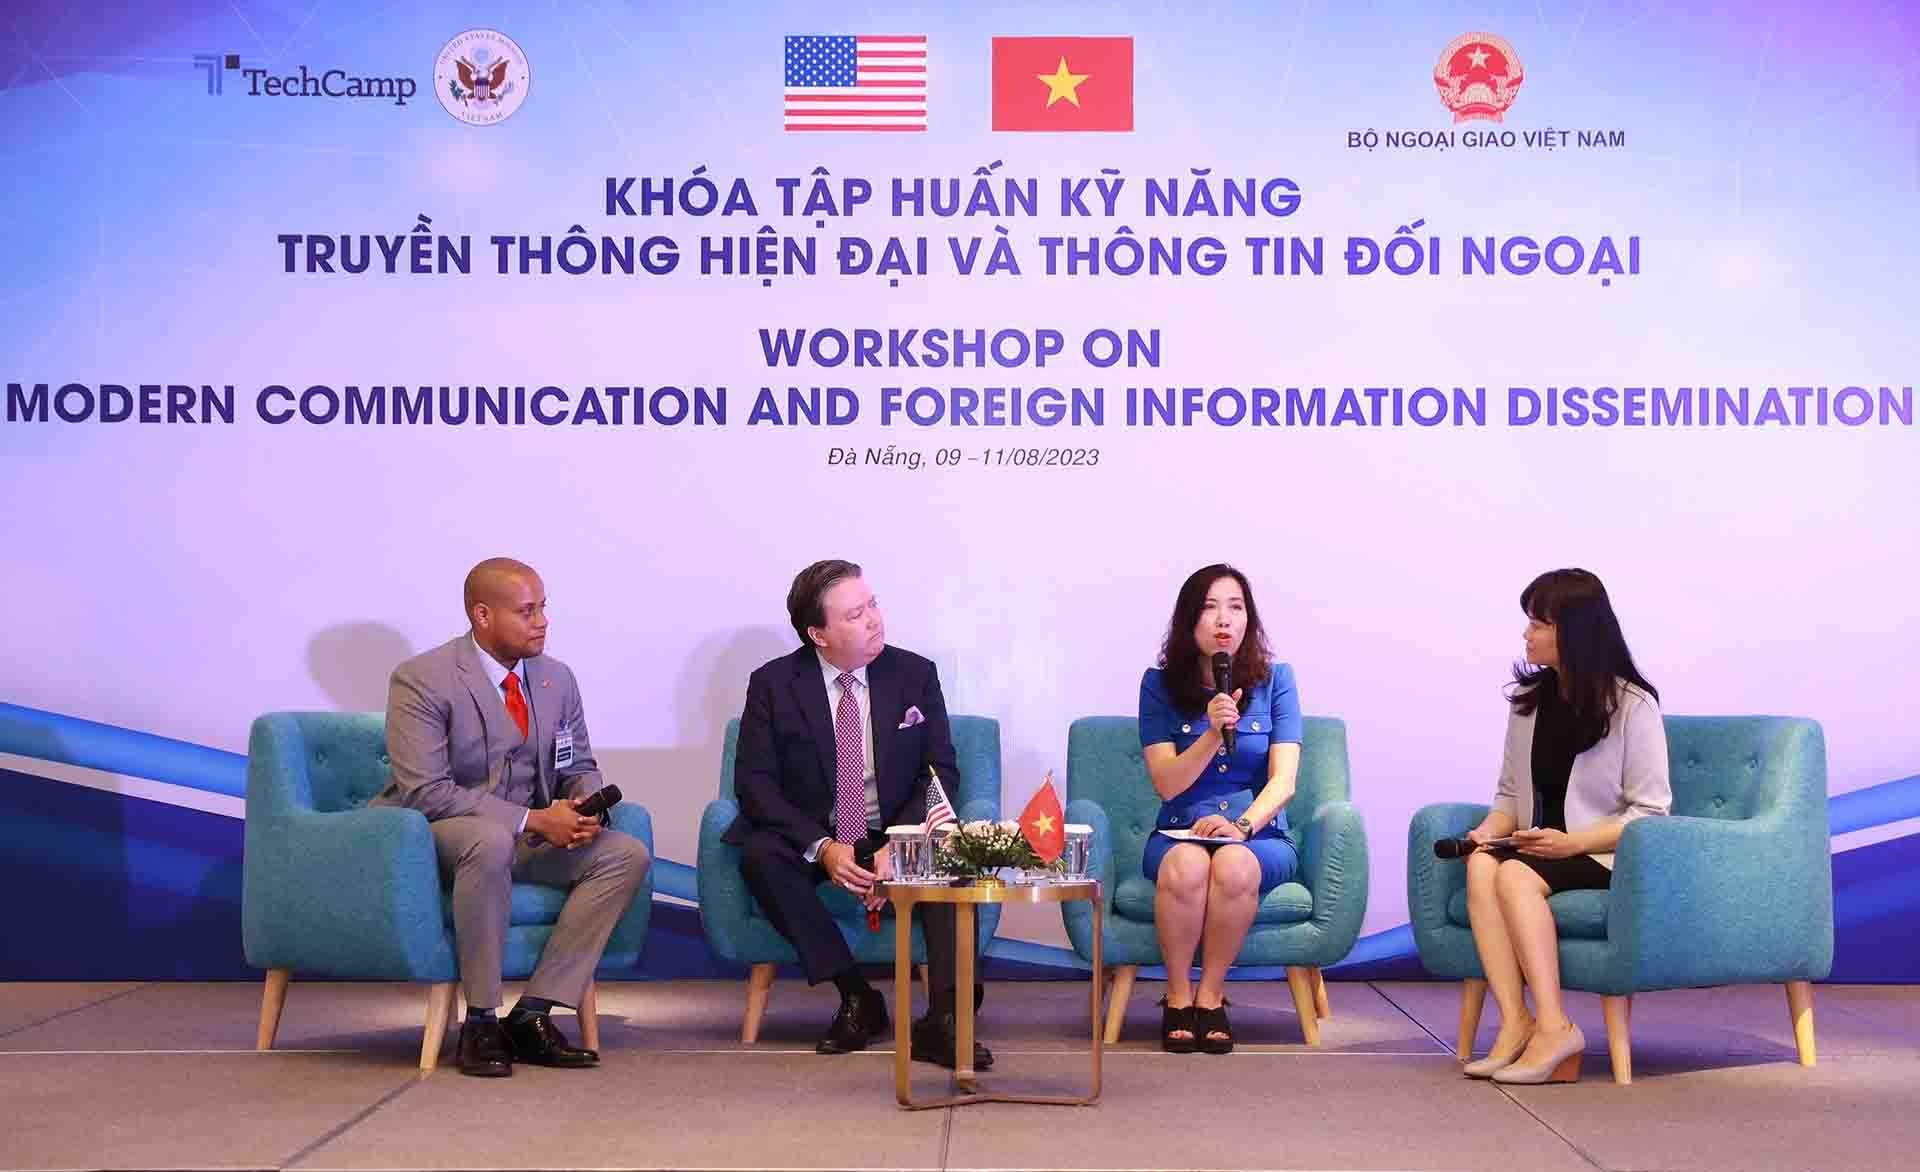 Bộ Ngoại giao phối hợp với Đại sứ quán Hoa Kỳ tổ chức khoá tập huấn kỹ năng truyền thông hiện đại và thông tin đối ngoại